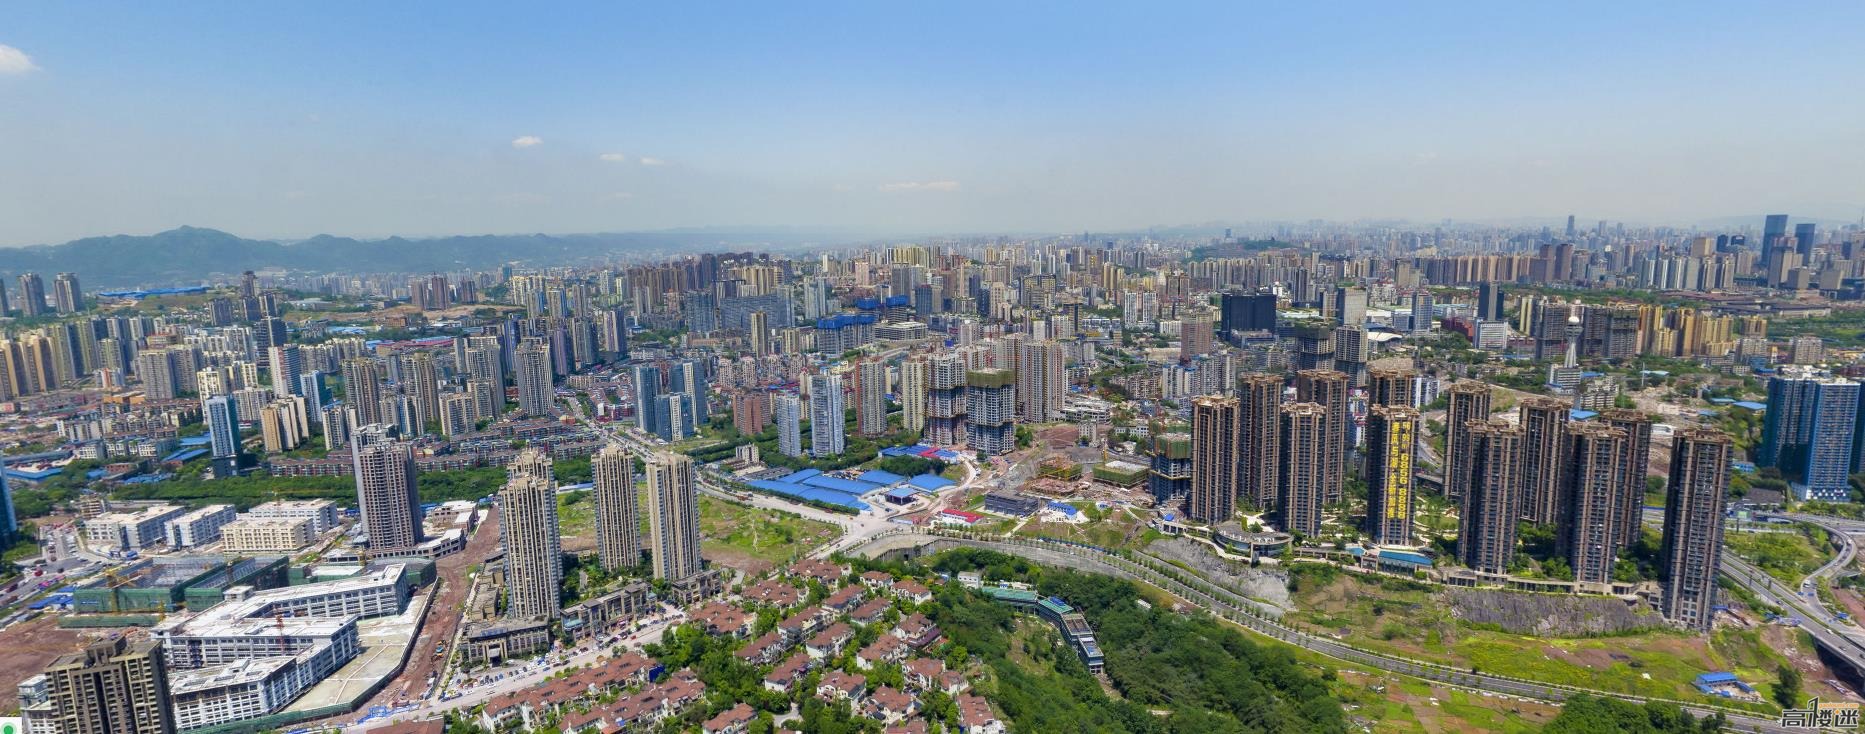 Chongqing City 2016 4.jpg